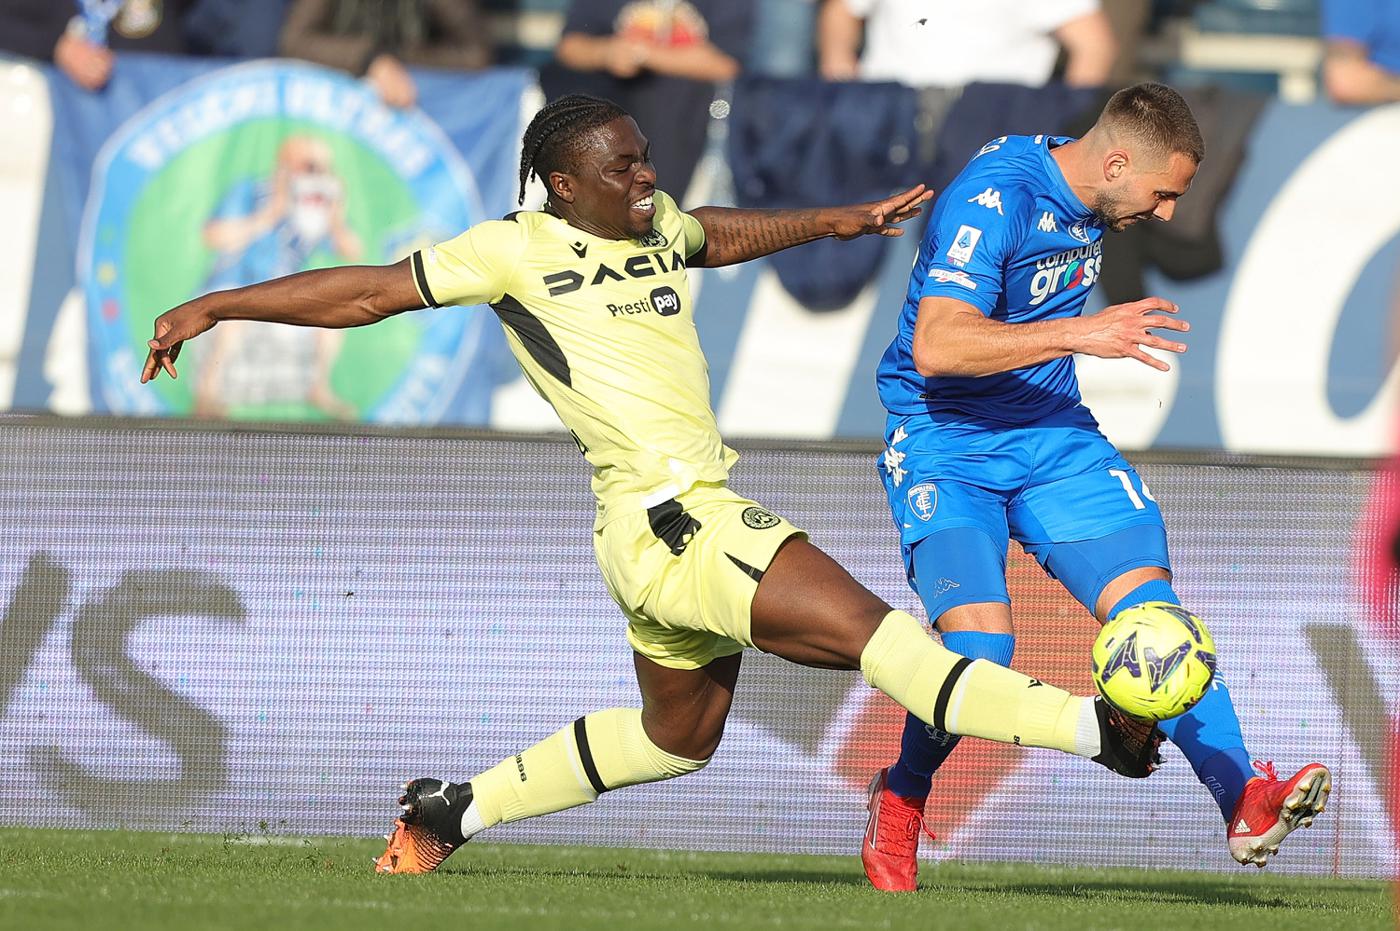 Empoli gegen Udinese - 0-1. Italienische Meisterschaft, Runde 26. Spielbericht, Statistik.